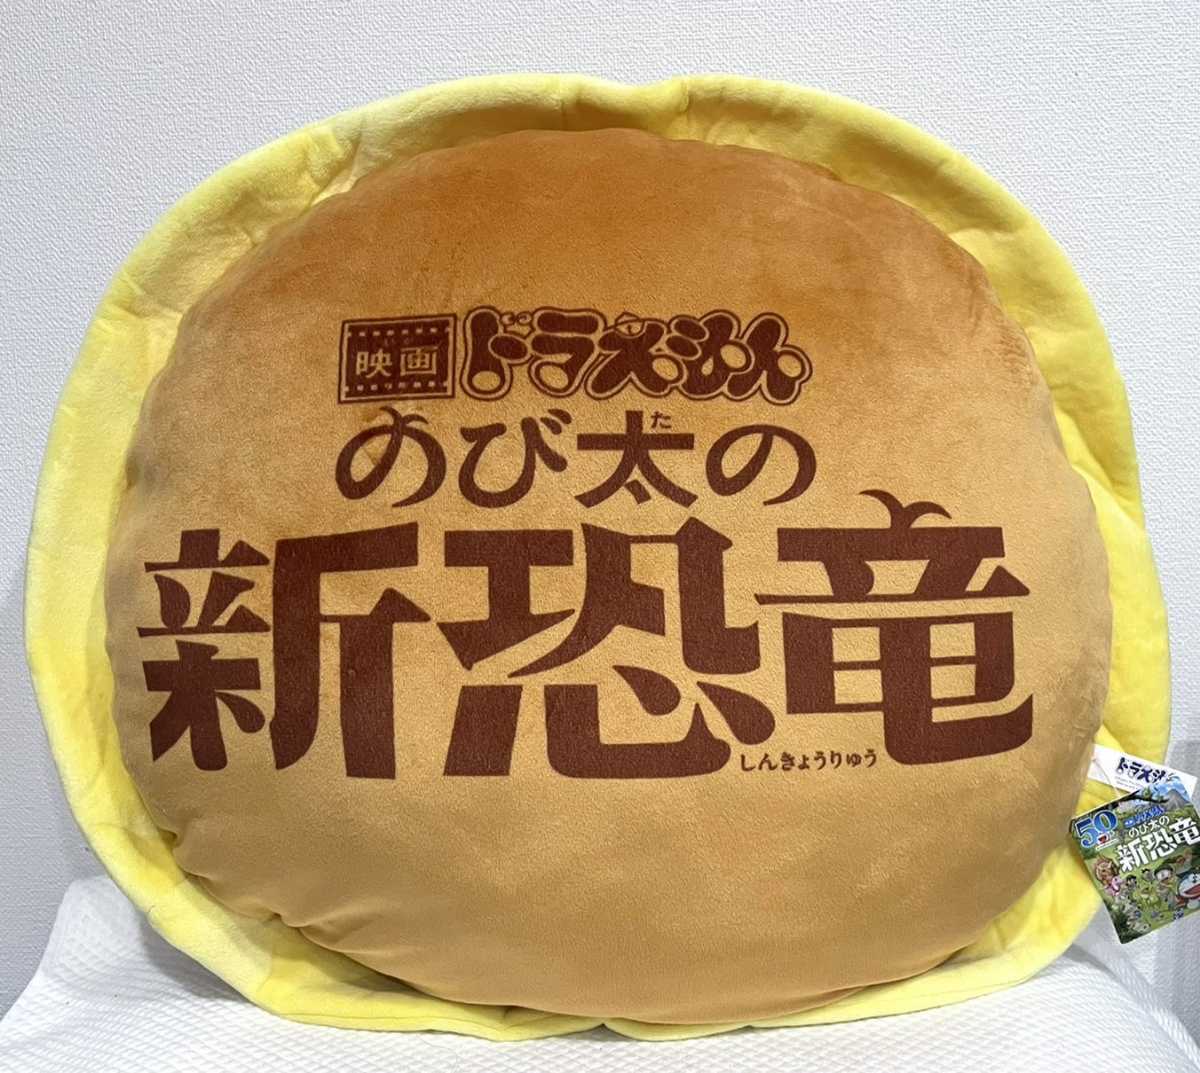 [ dorayaki подушка ] фильм Doraemon 2020 рост futoshi. новый динозавр dorayaki подушка кий & Mu с биркой / гонг жарение BIG мягкая игрушка DM